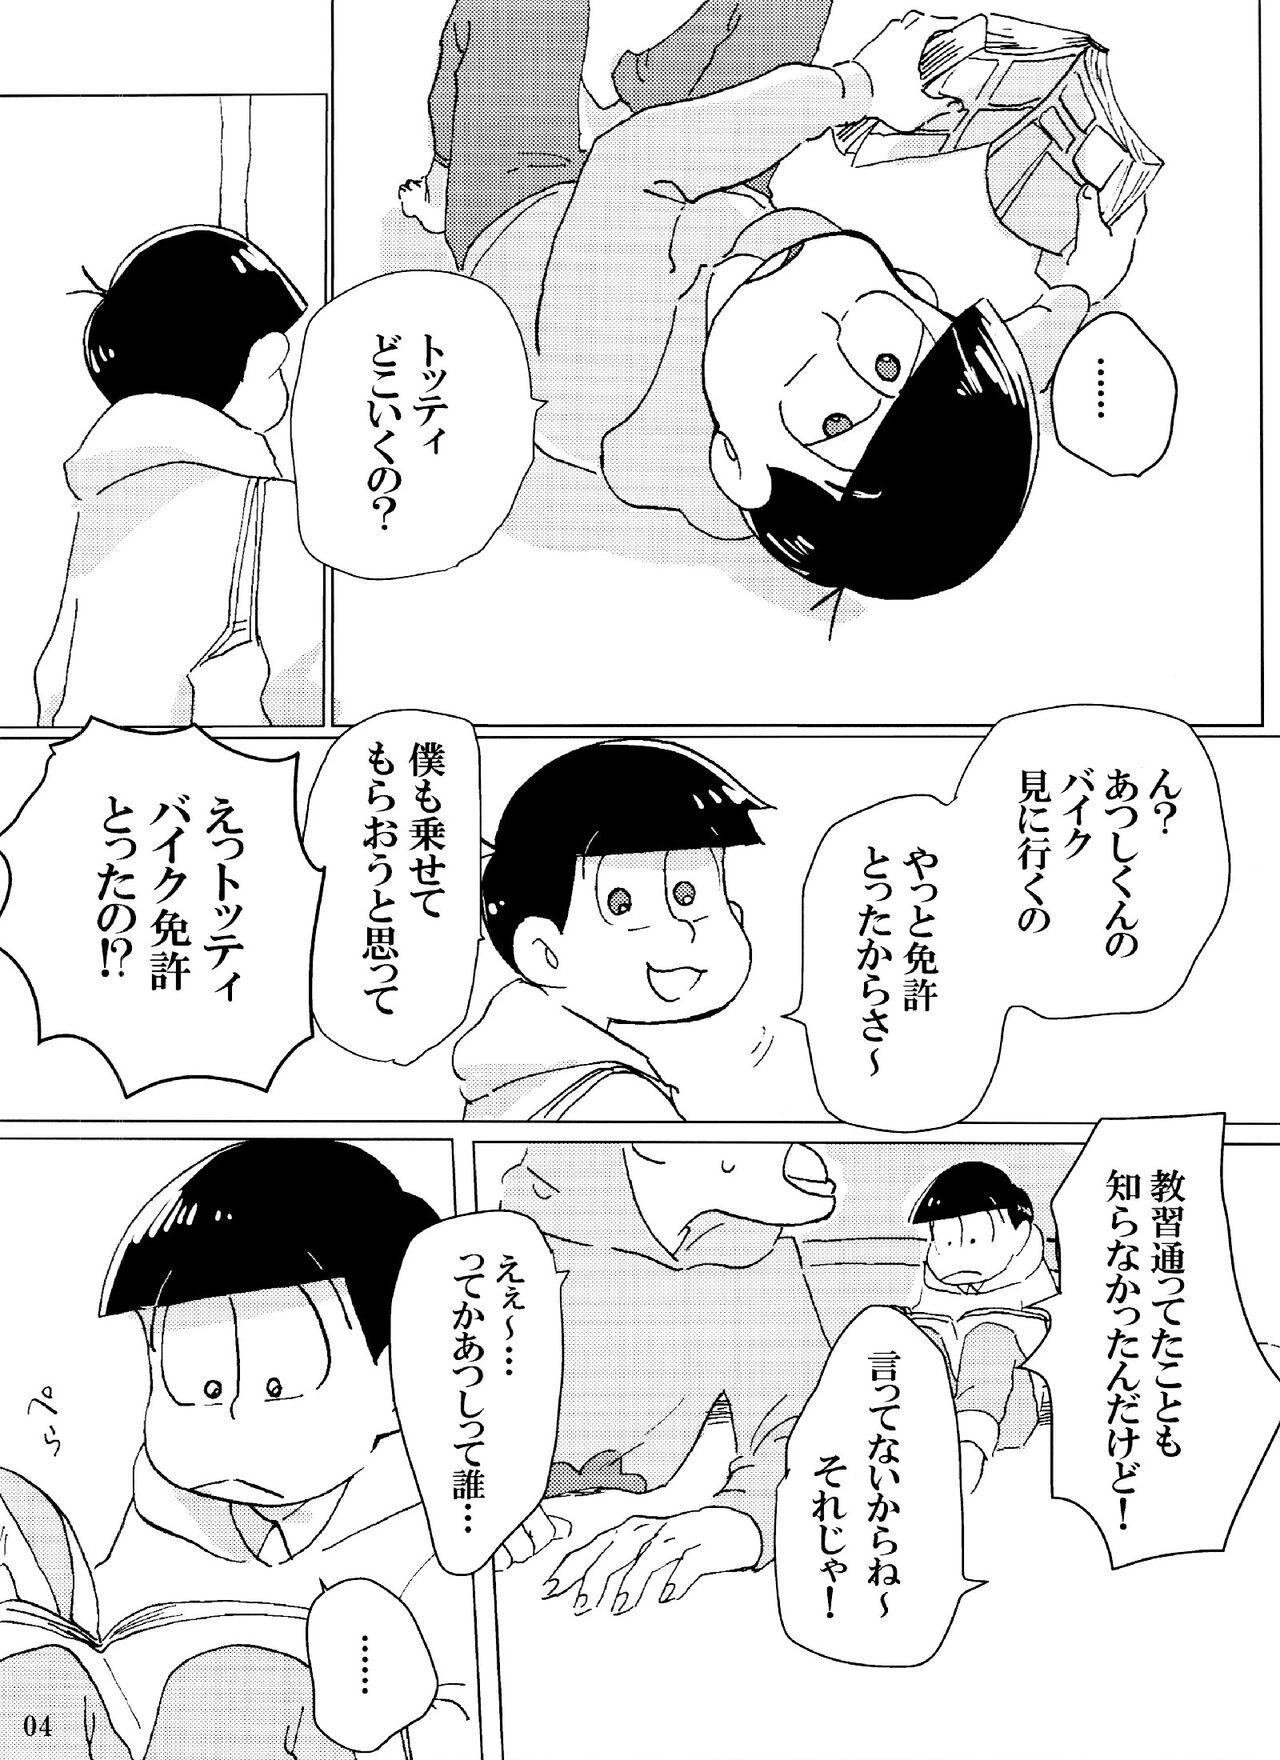 Bigbutt Baka to shiko matsu ga ma guwa u hanashi - Osomatsu san Old Young - Page 4